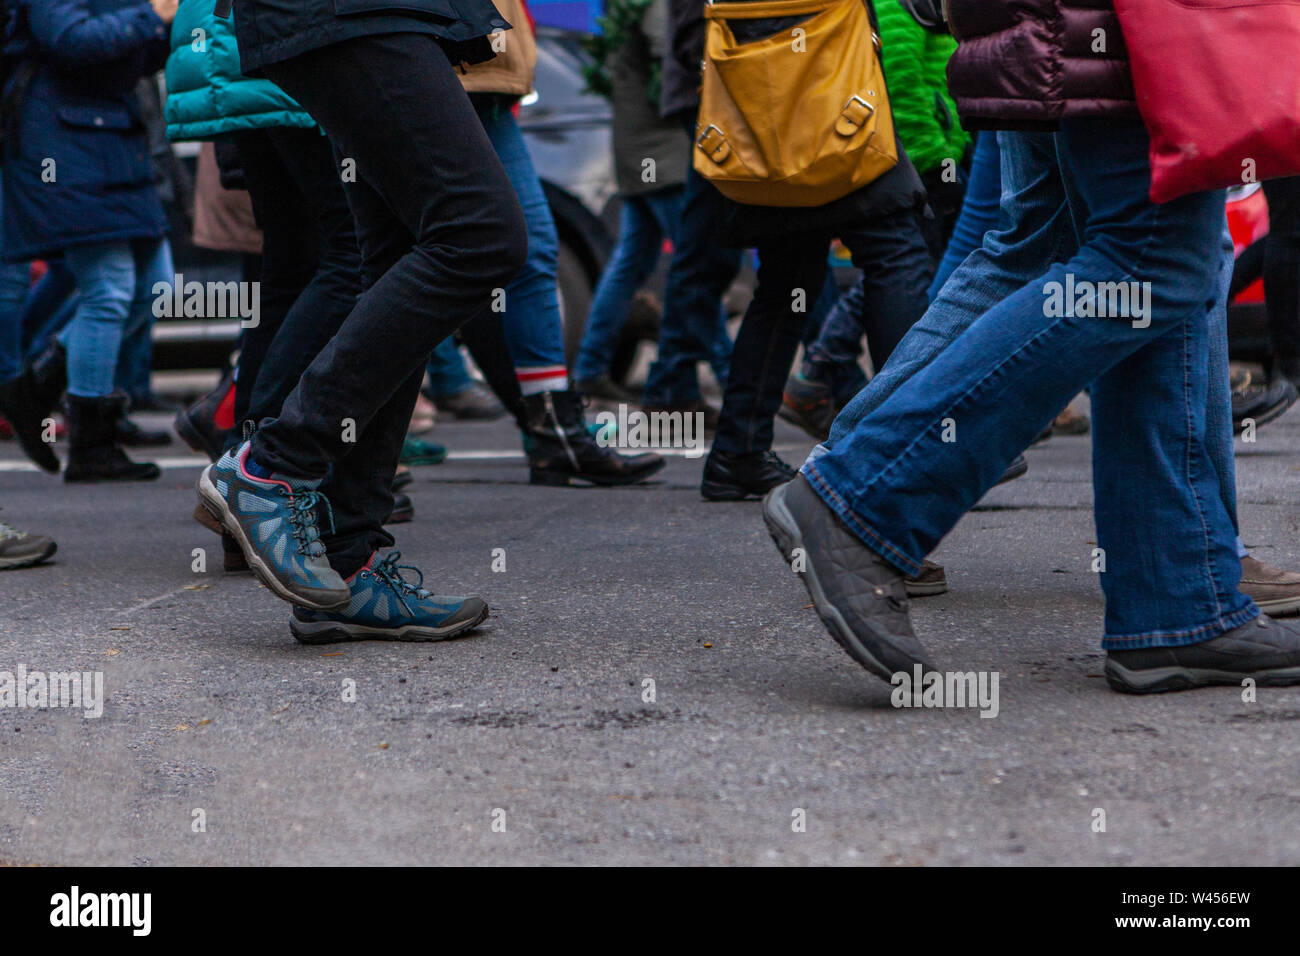 Una vista laterale sulla metà inferiore di un grande gruppo di persone a piedi nella stessa direzione durante una manifestazione contro il cambiamento climatico su una strada. Foto Stock